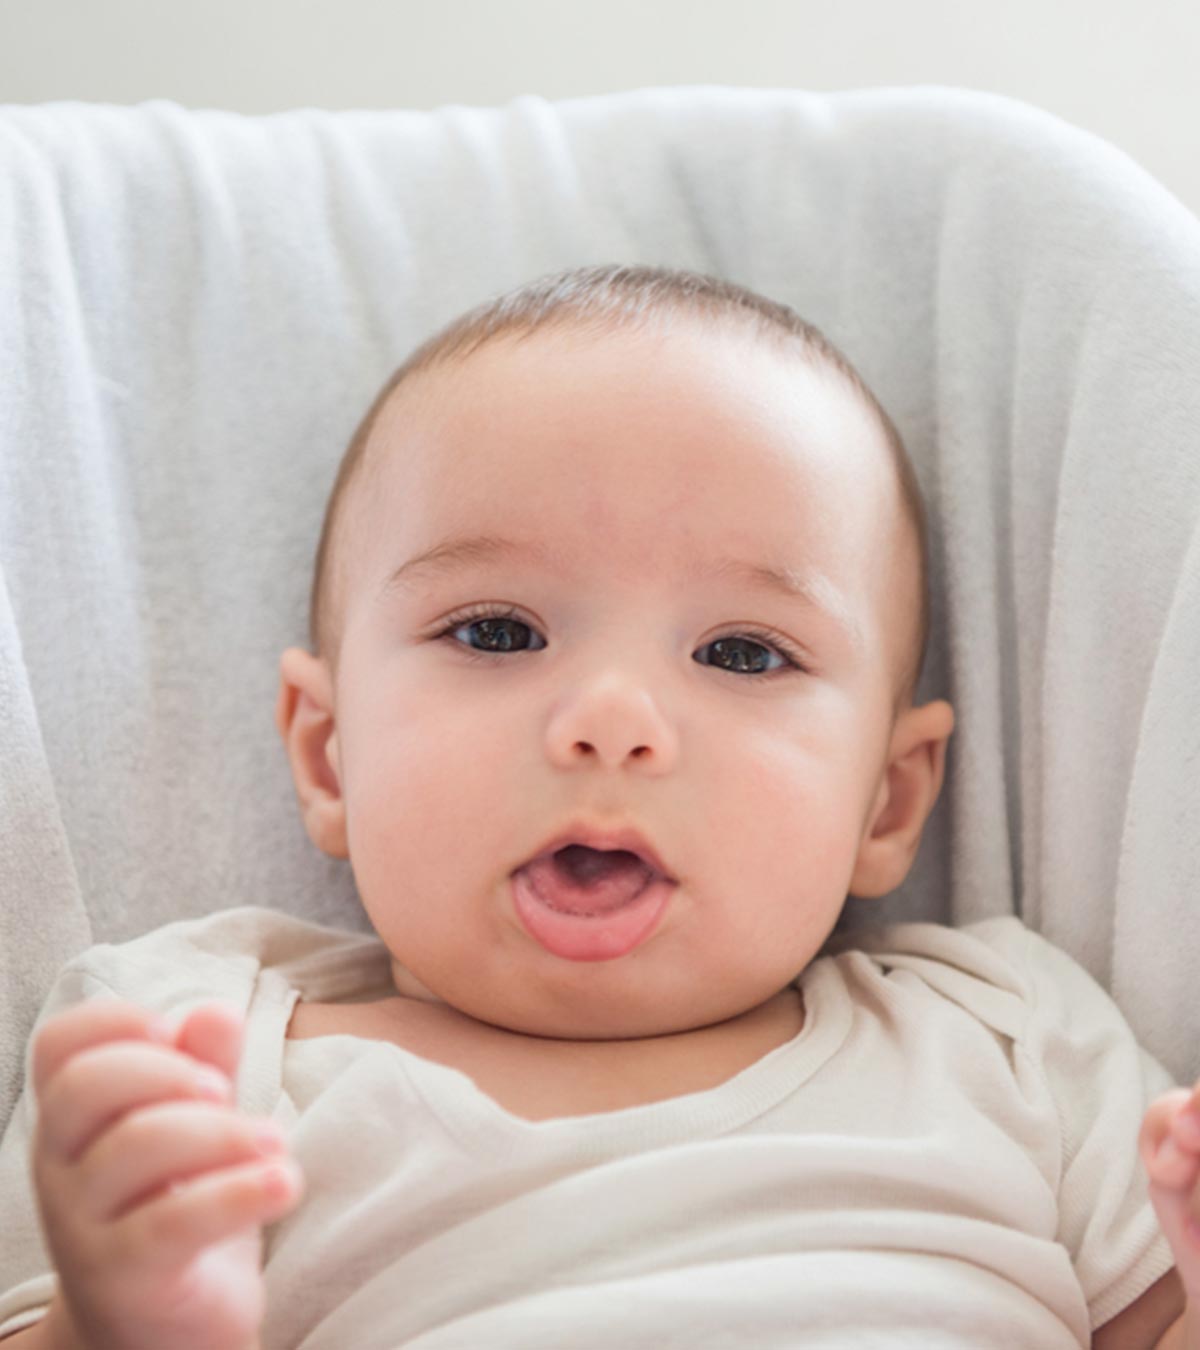 为什么婴儿会假装咳嗽?阻止它的原因和方法